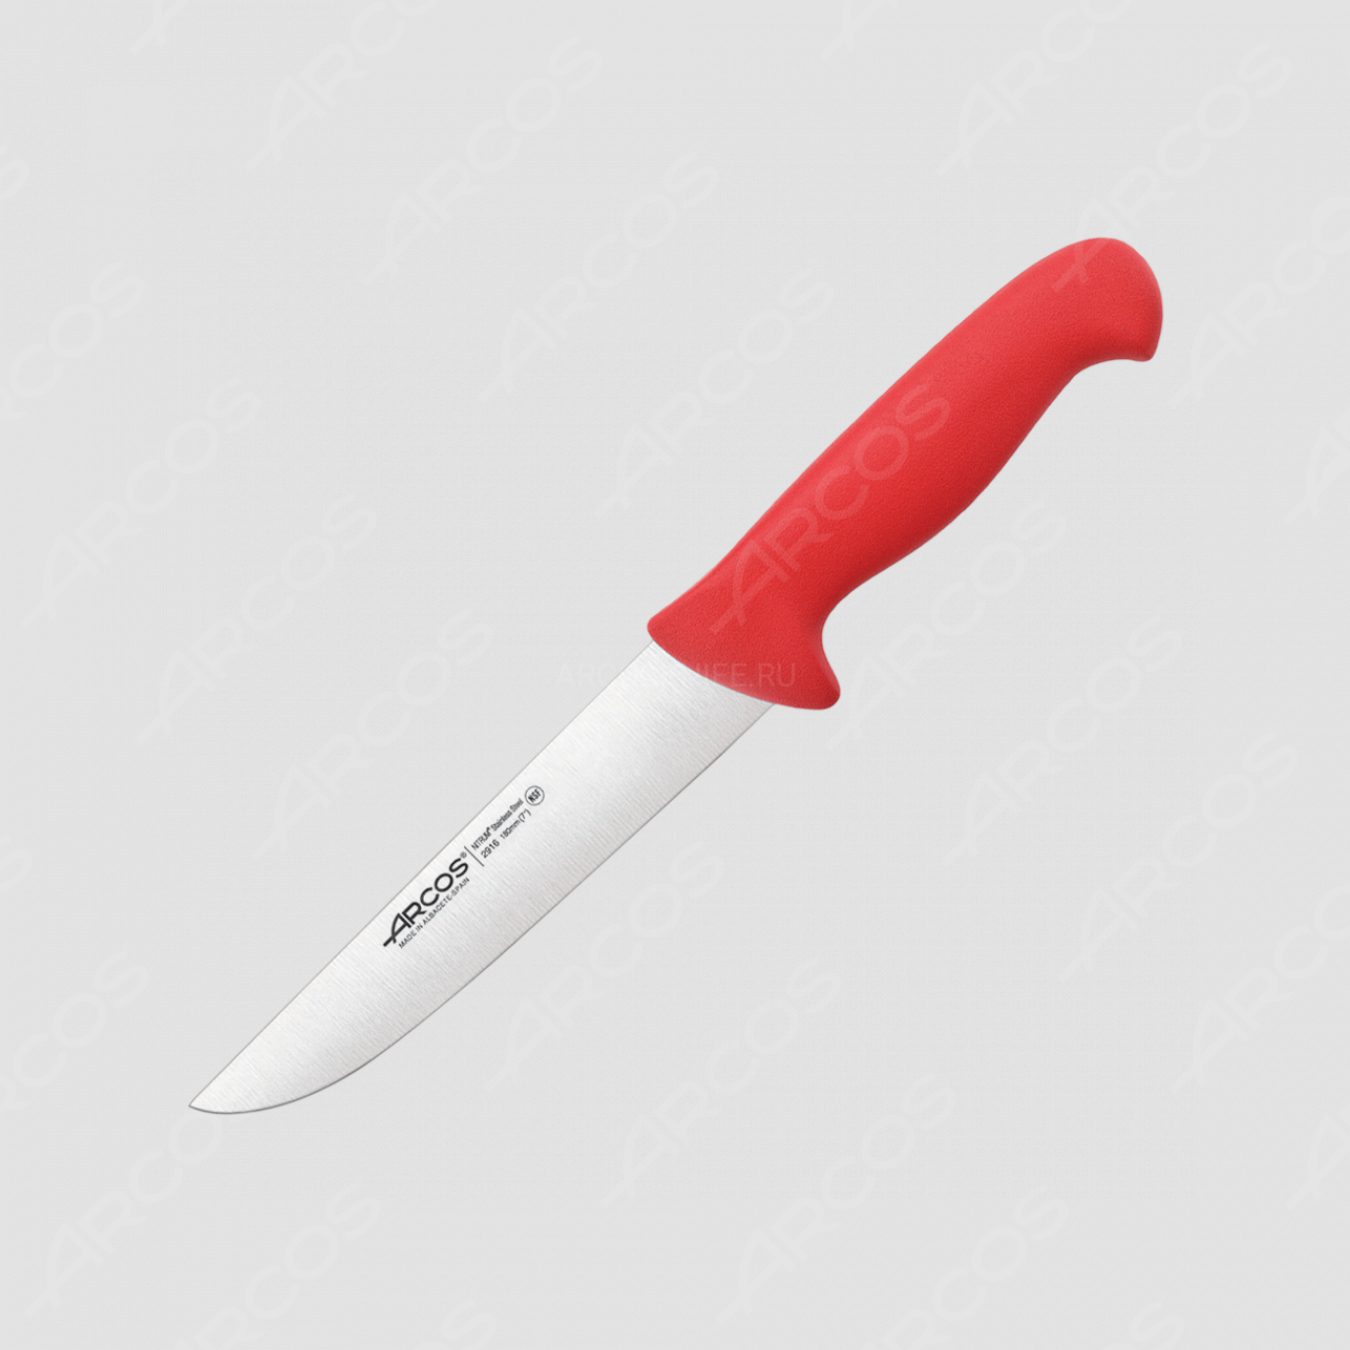 Нож кухонный для разделки 18 см, рукоять - красная, серия 2900, ARCOS, Испания